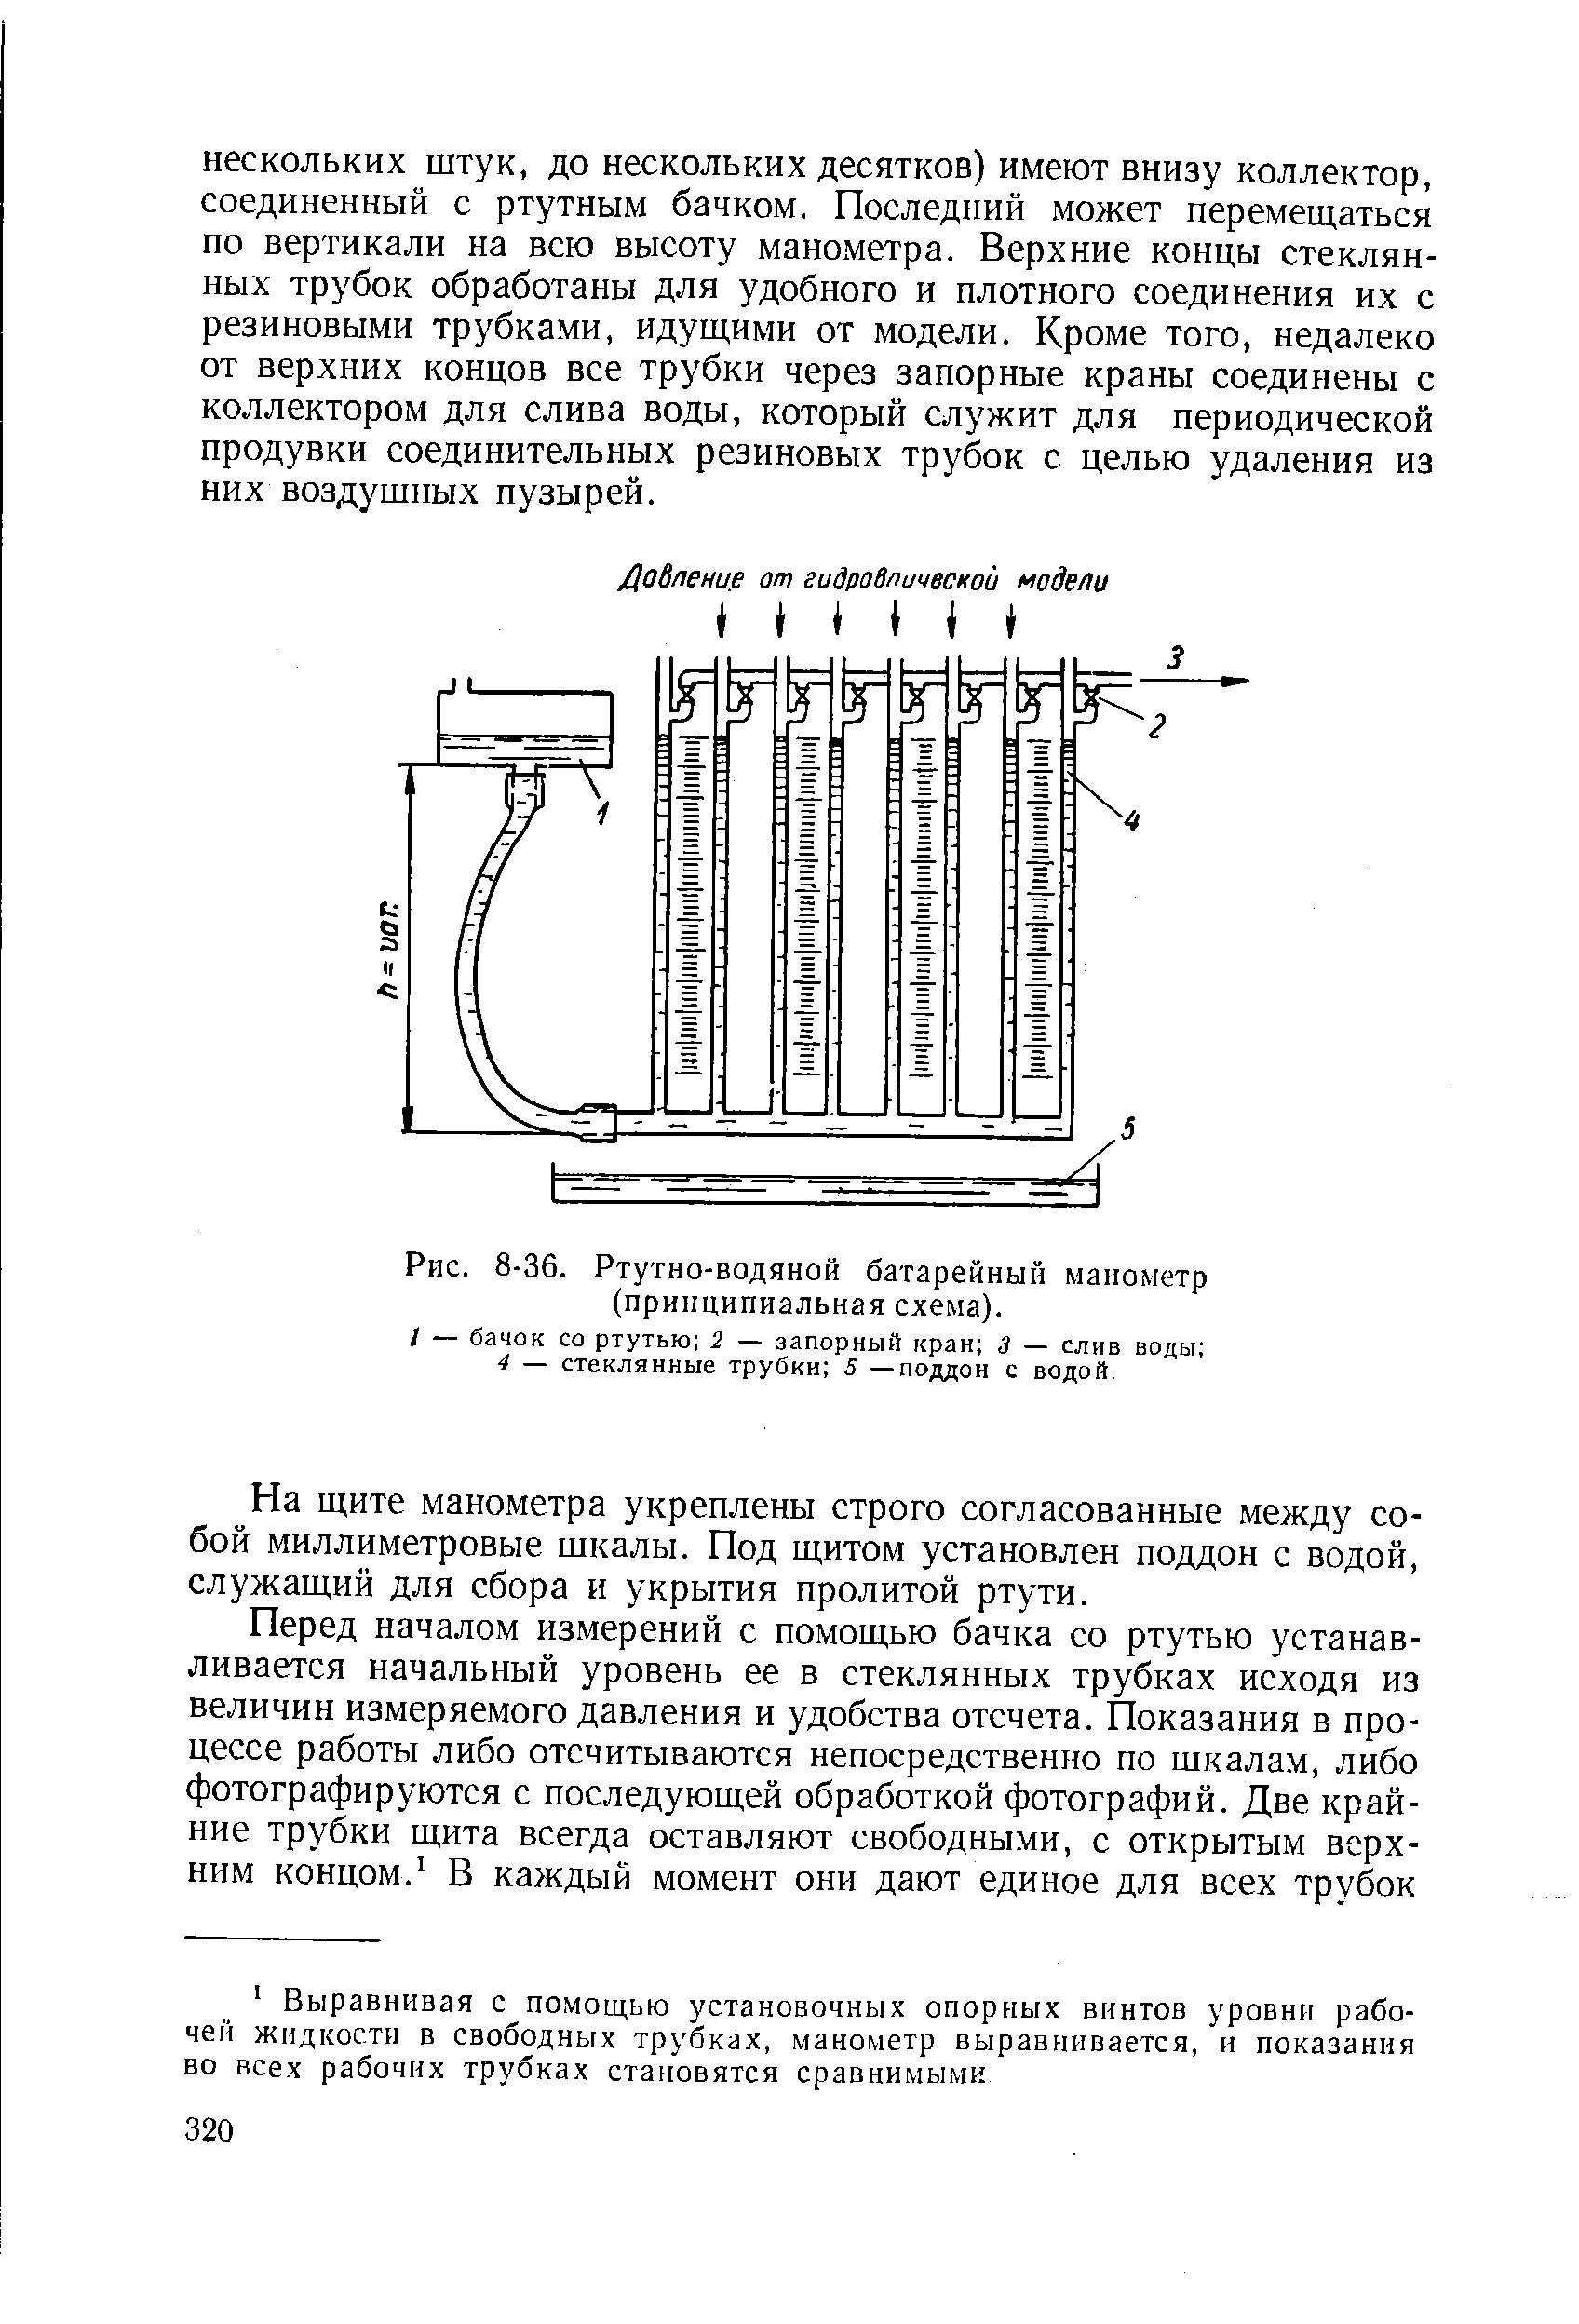 Рис. 8-36. Ртутно-водяной батарейный манометр (принципиальная схема).
